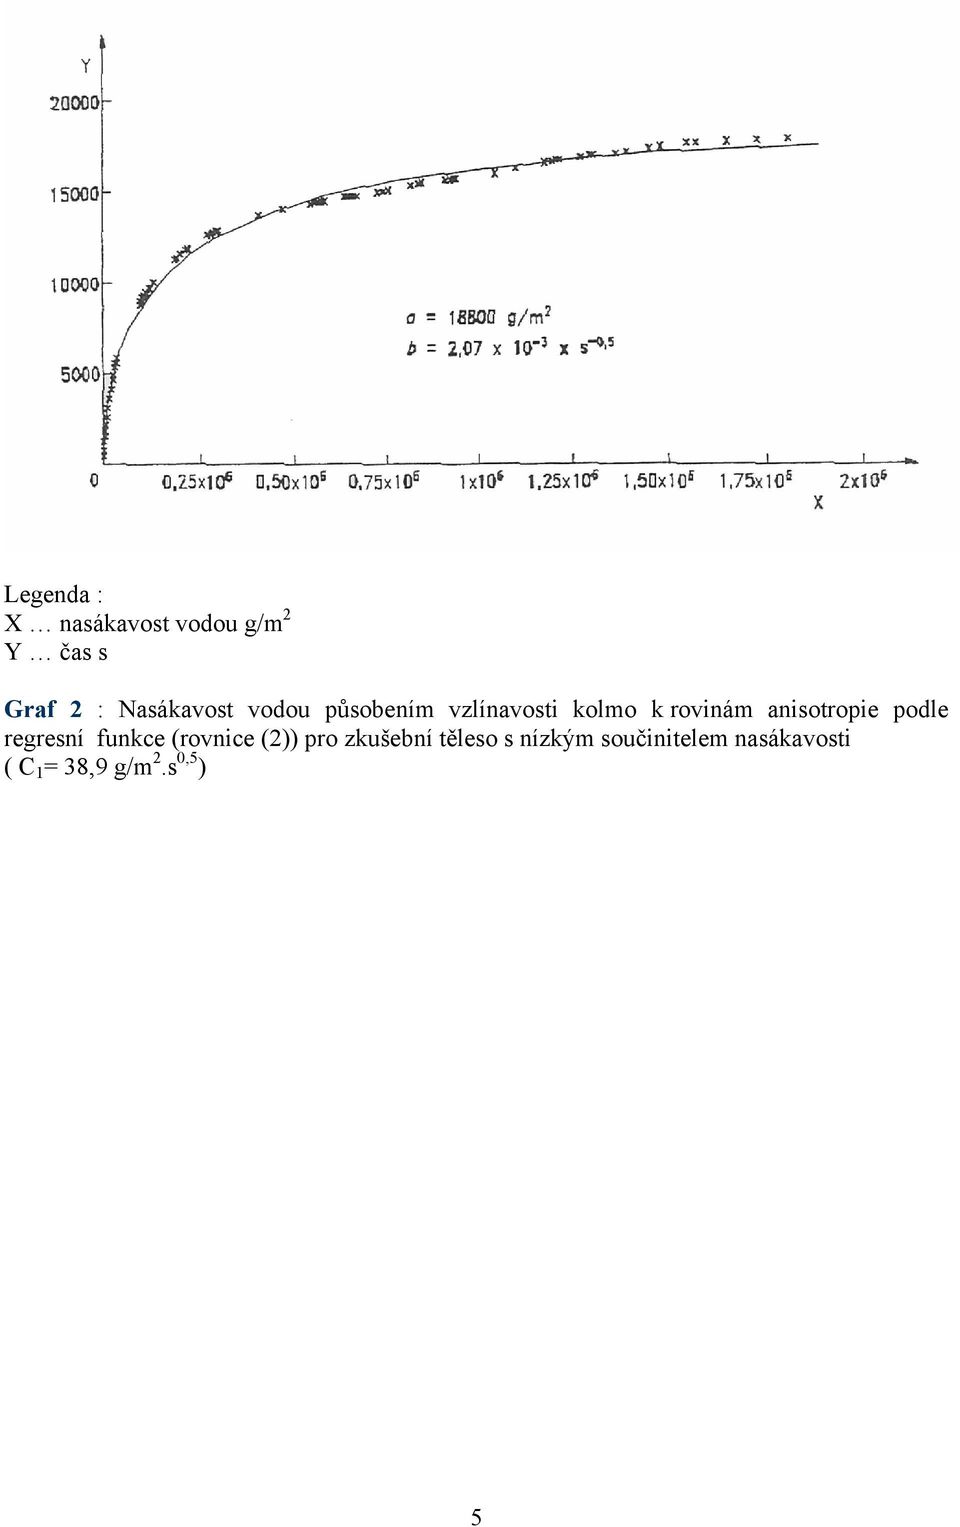 aniotropie pole regrení funkce (rovnice (2)) pro